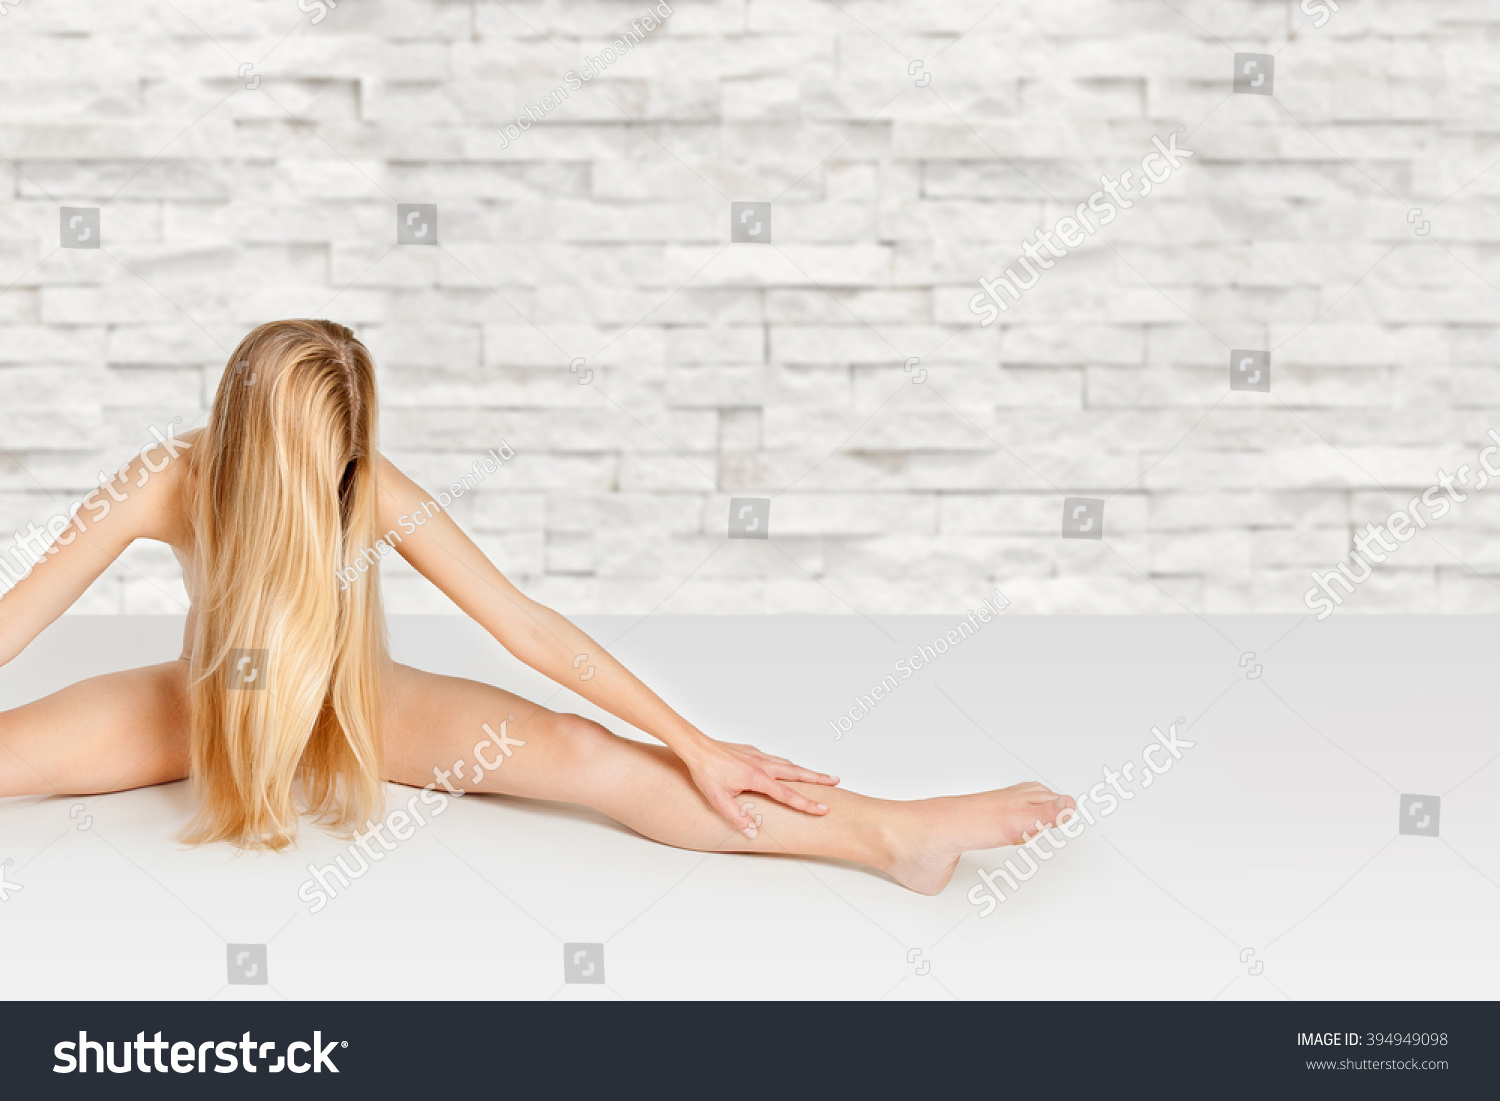 Nude Women Flexible